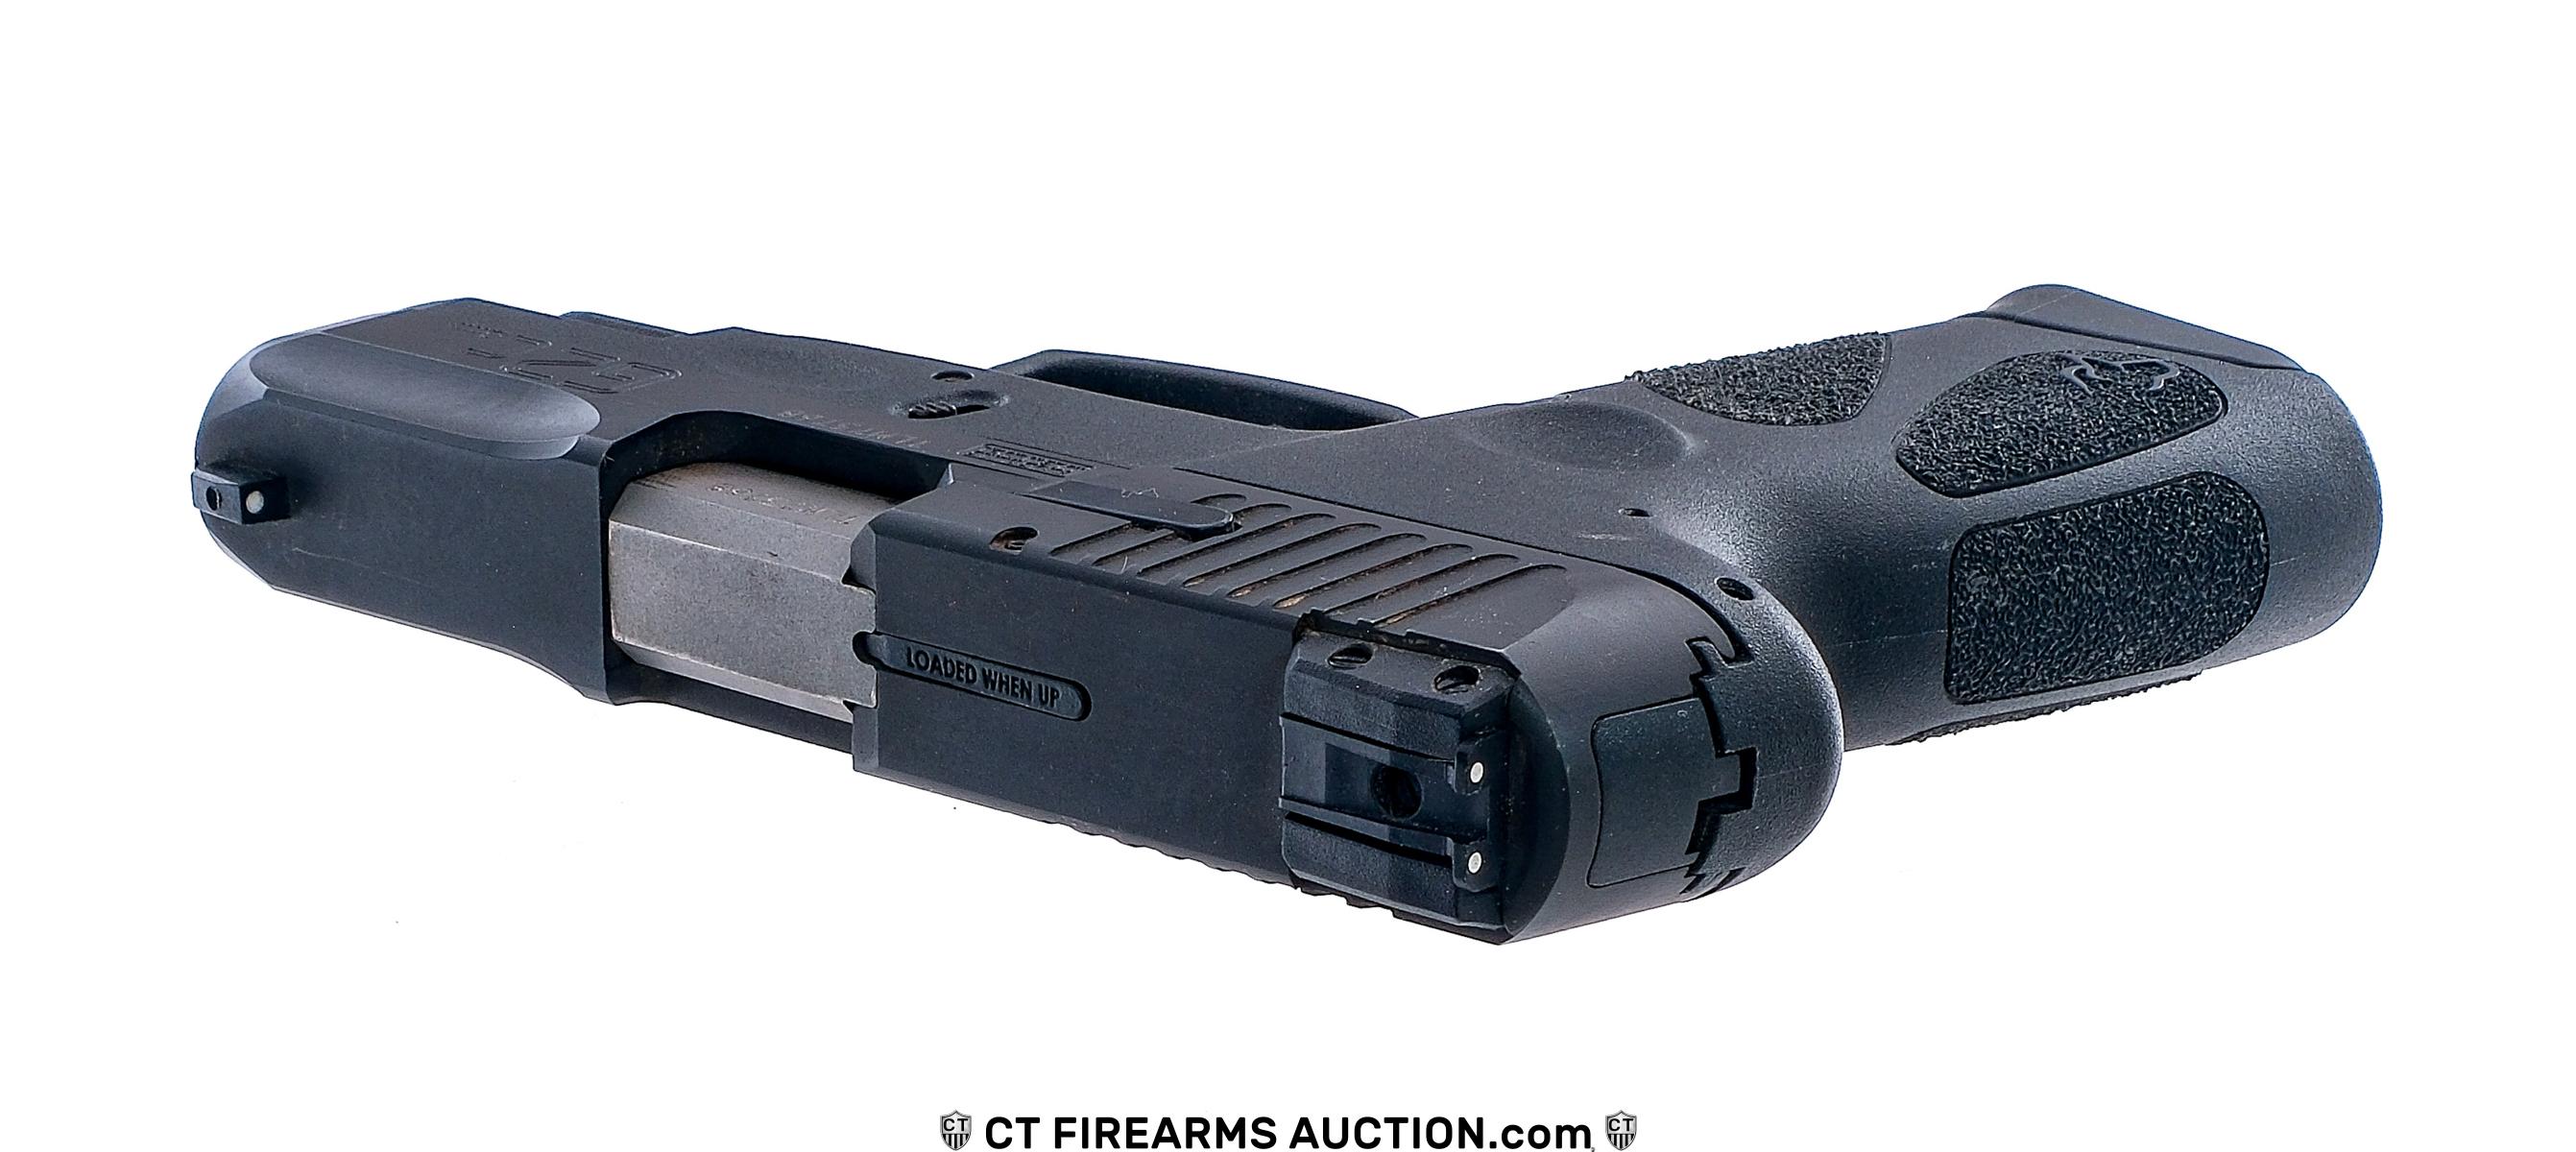 Taurus G2C 9mm Semi Auto Pistol